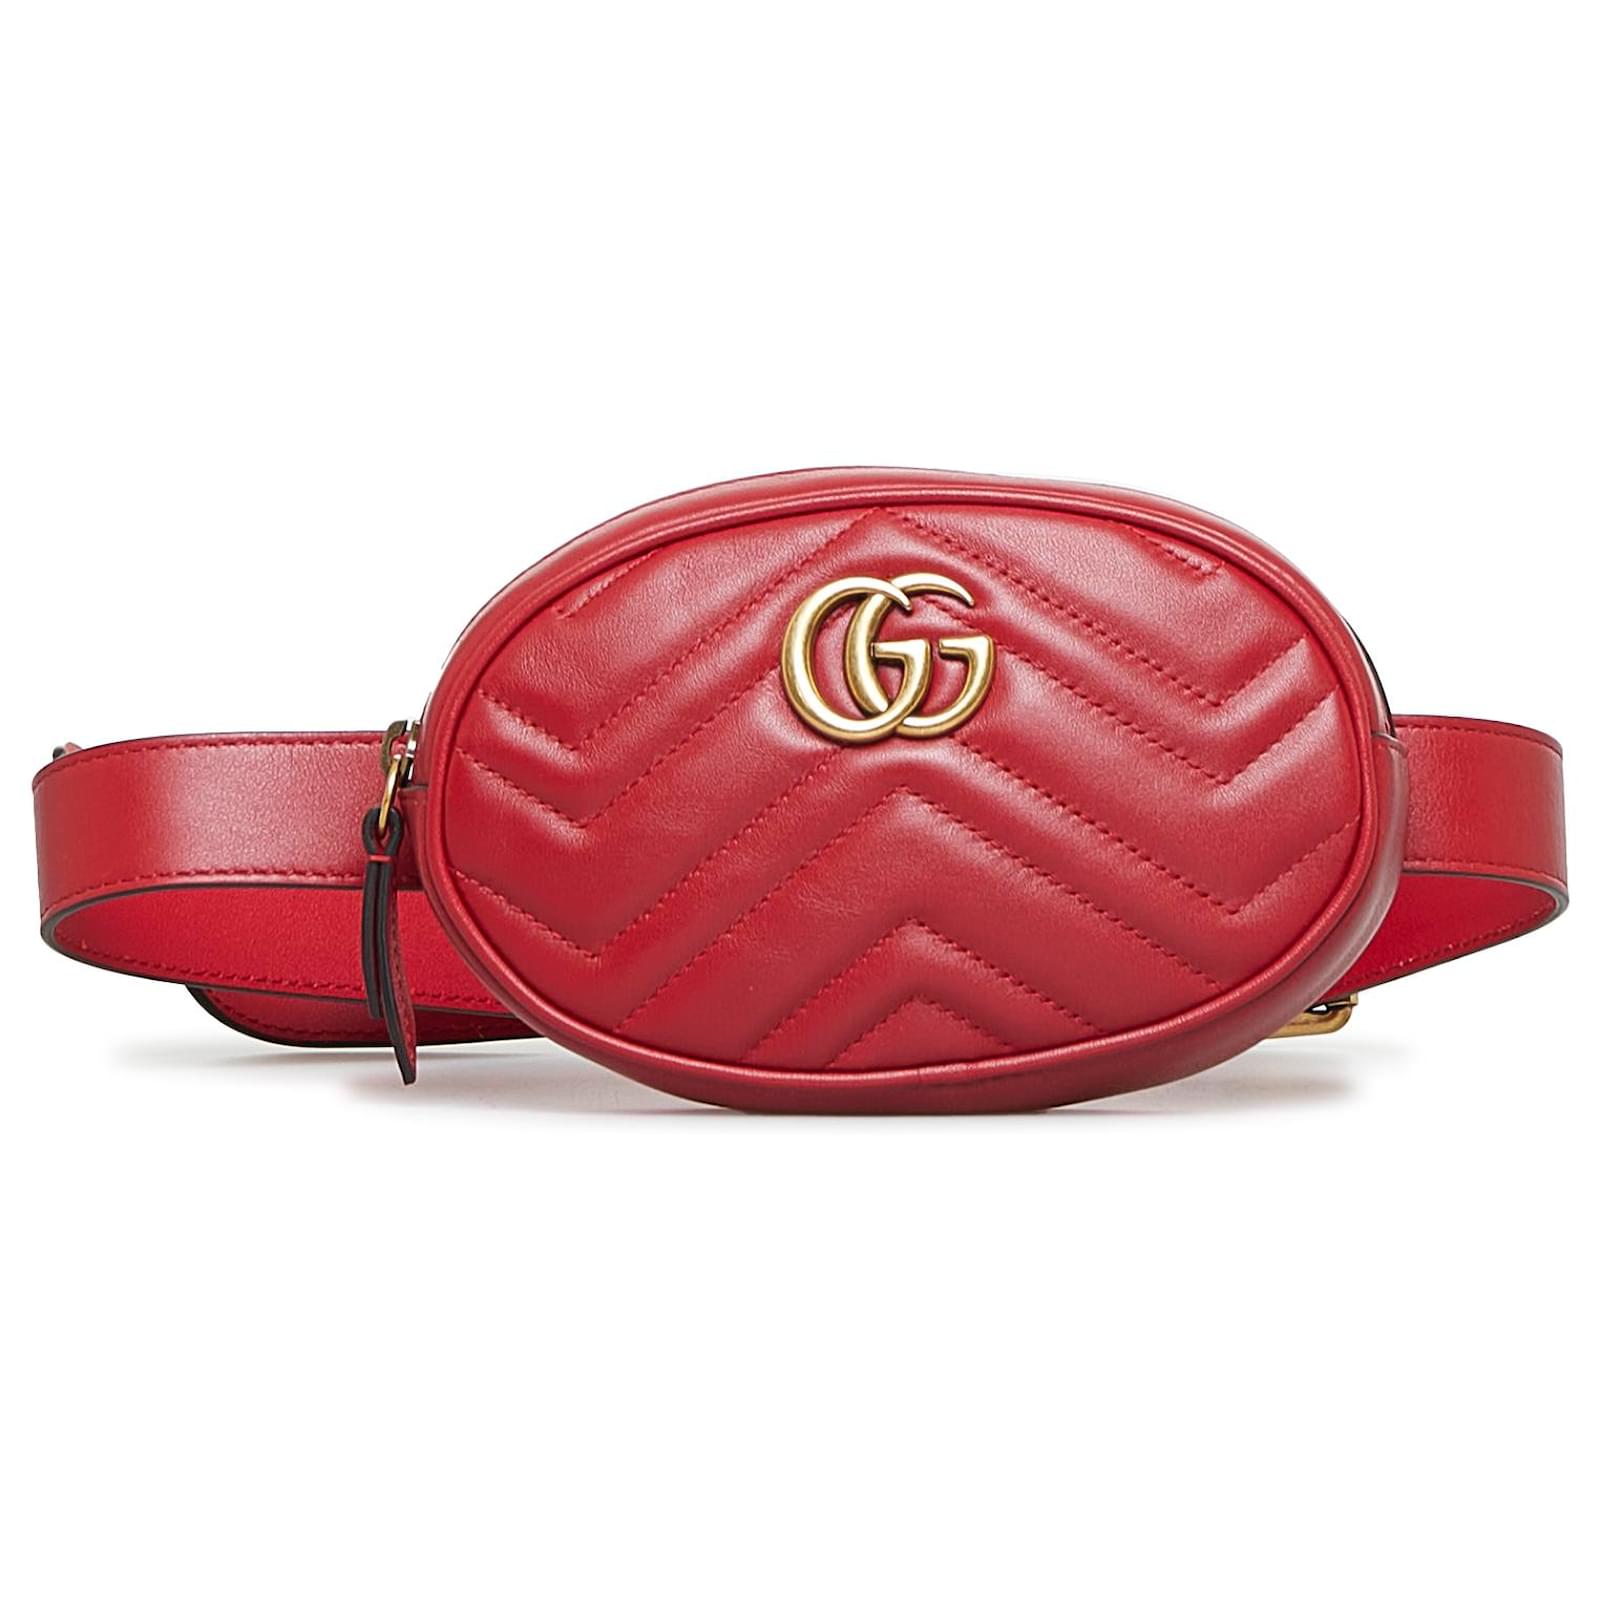 Gucci - Marmont Mini Handbag + Belt Bag